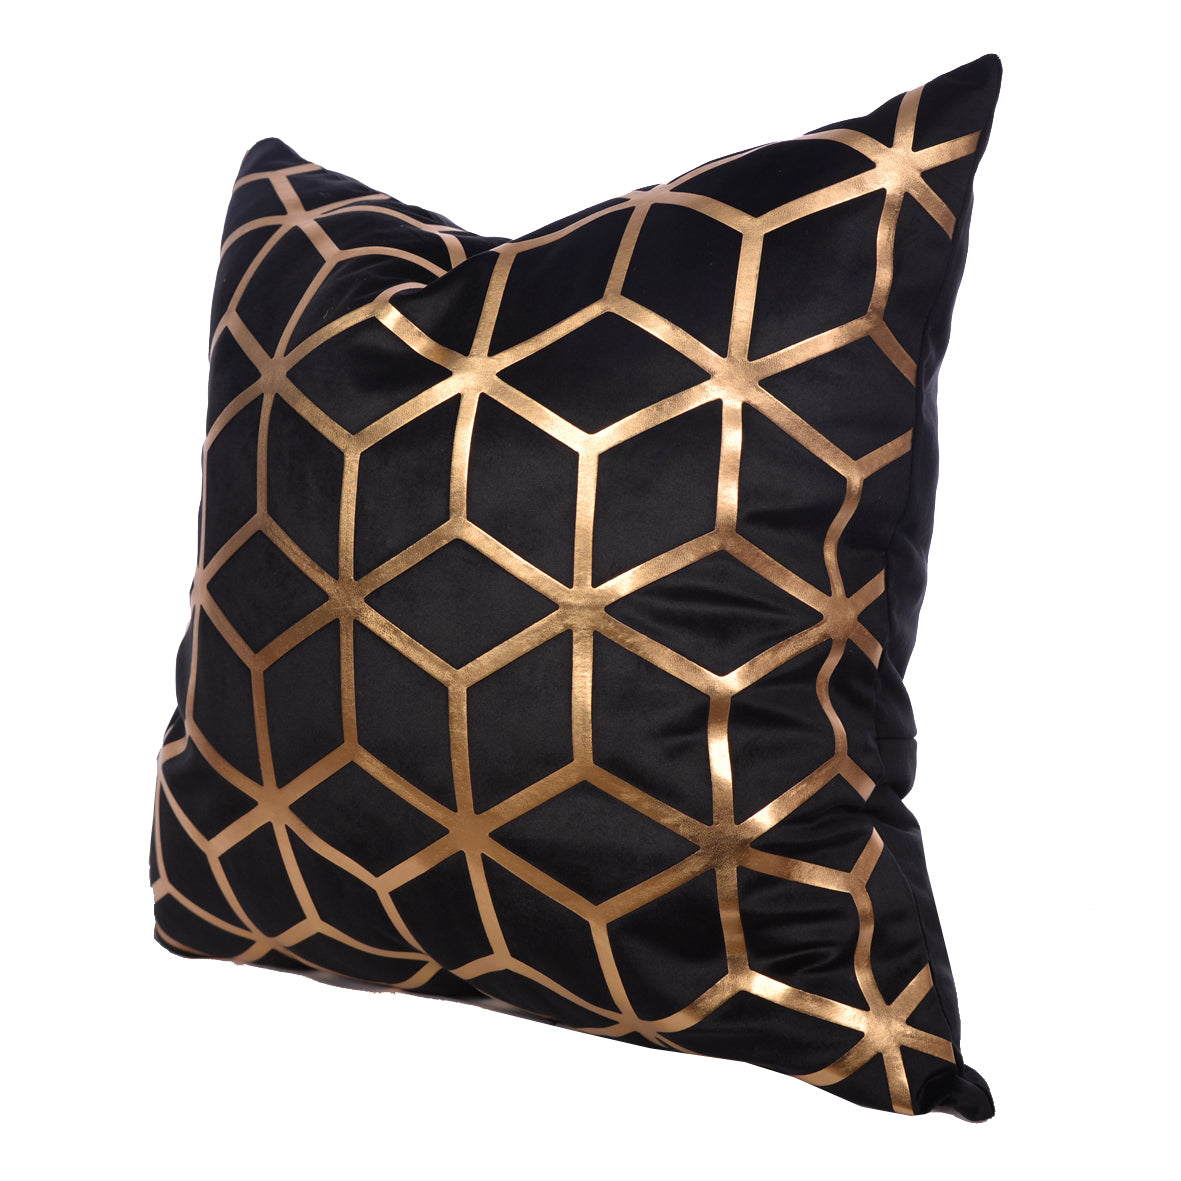 Luxury Velvet Throw Pillow Cover (Block & Gold Cushion Cover)